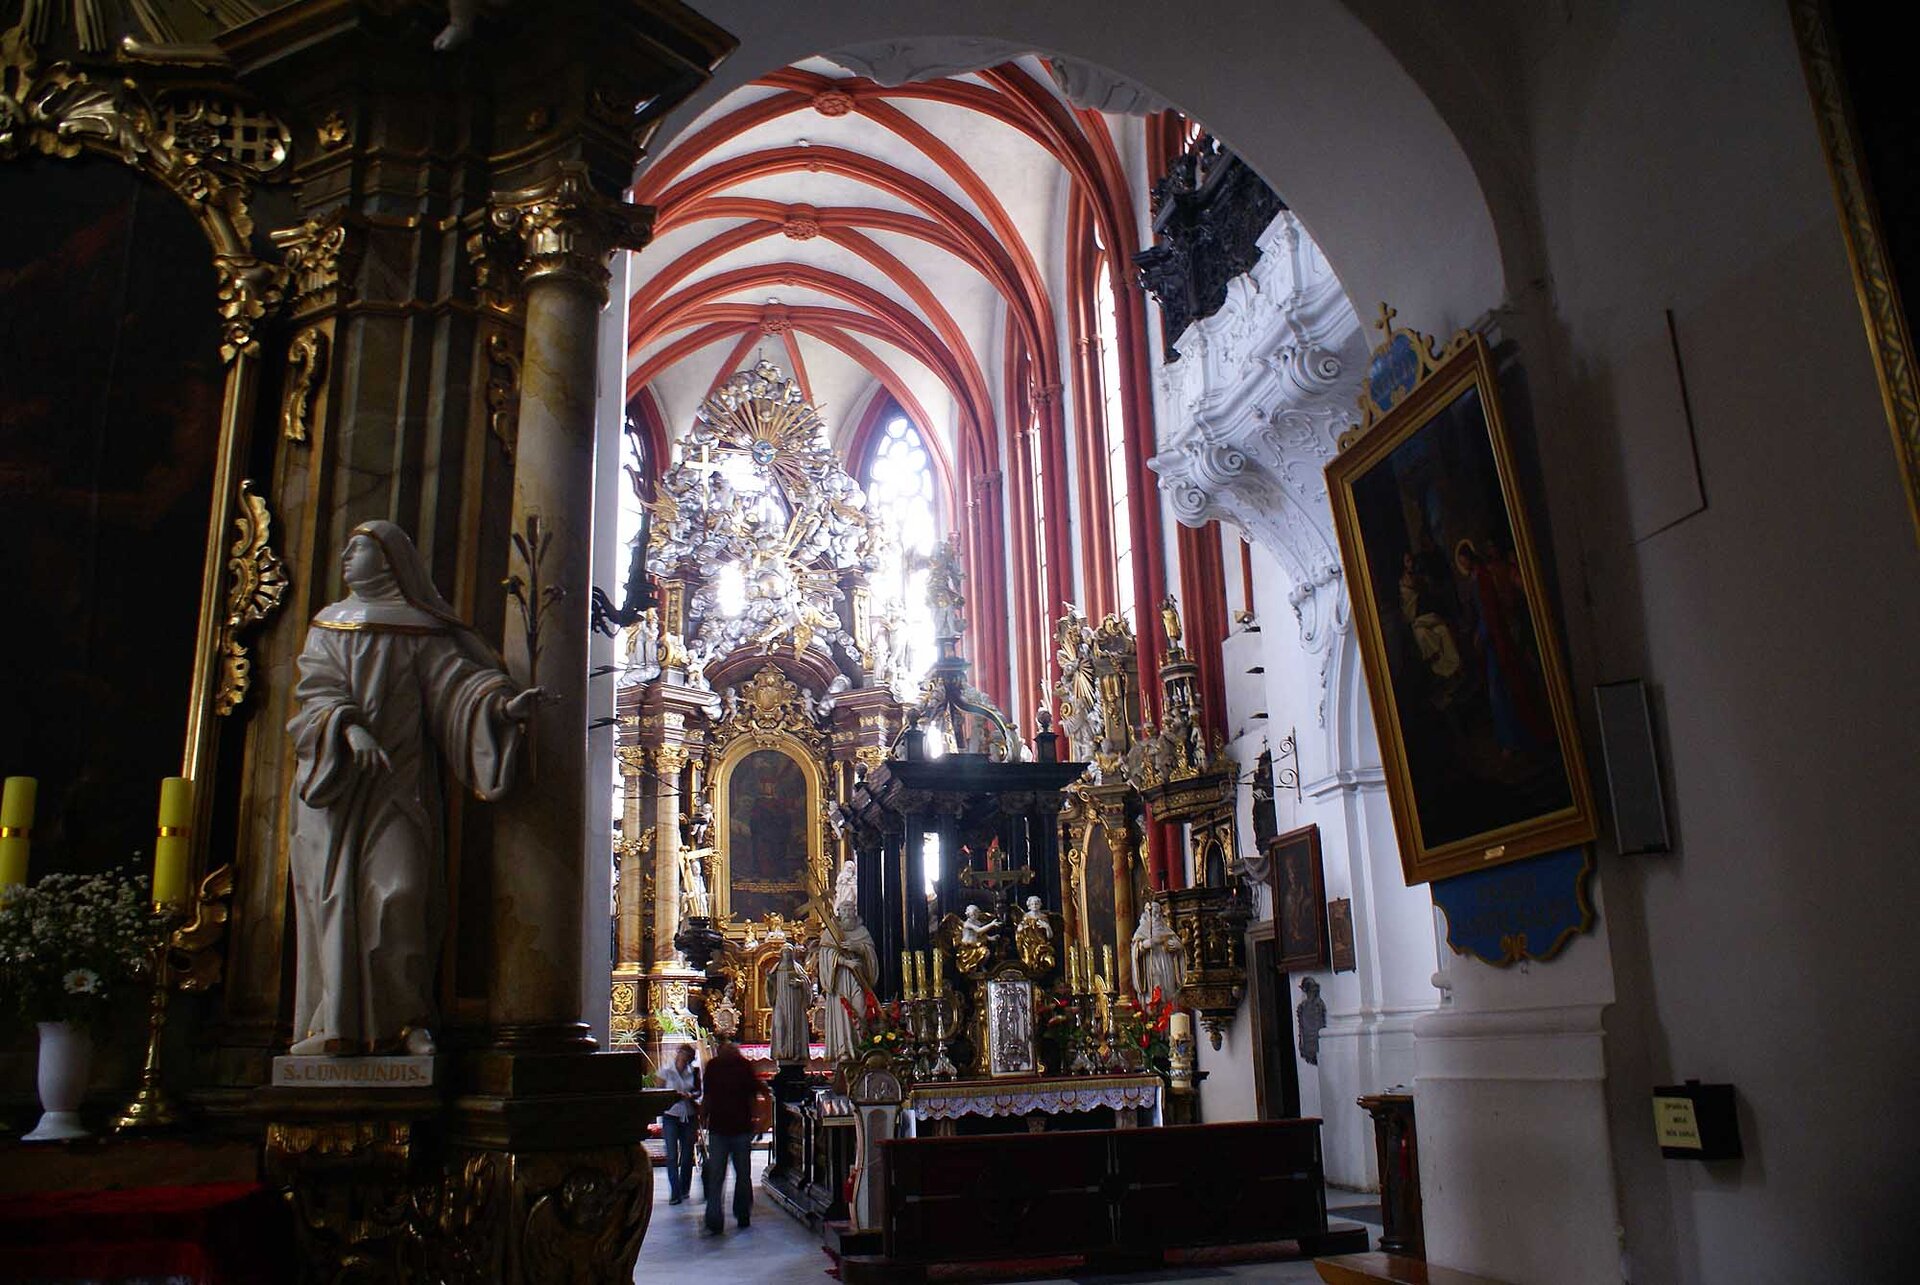 Zdjęcie przedstawia wnętrze kościoła. Widać ołtarz ze złotymi zdobieniami, sklepienie, obrazy na ścianach w złotych ramach. 